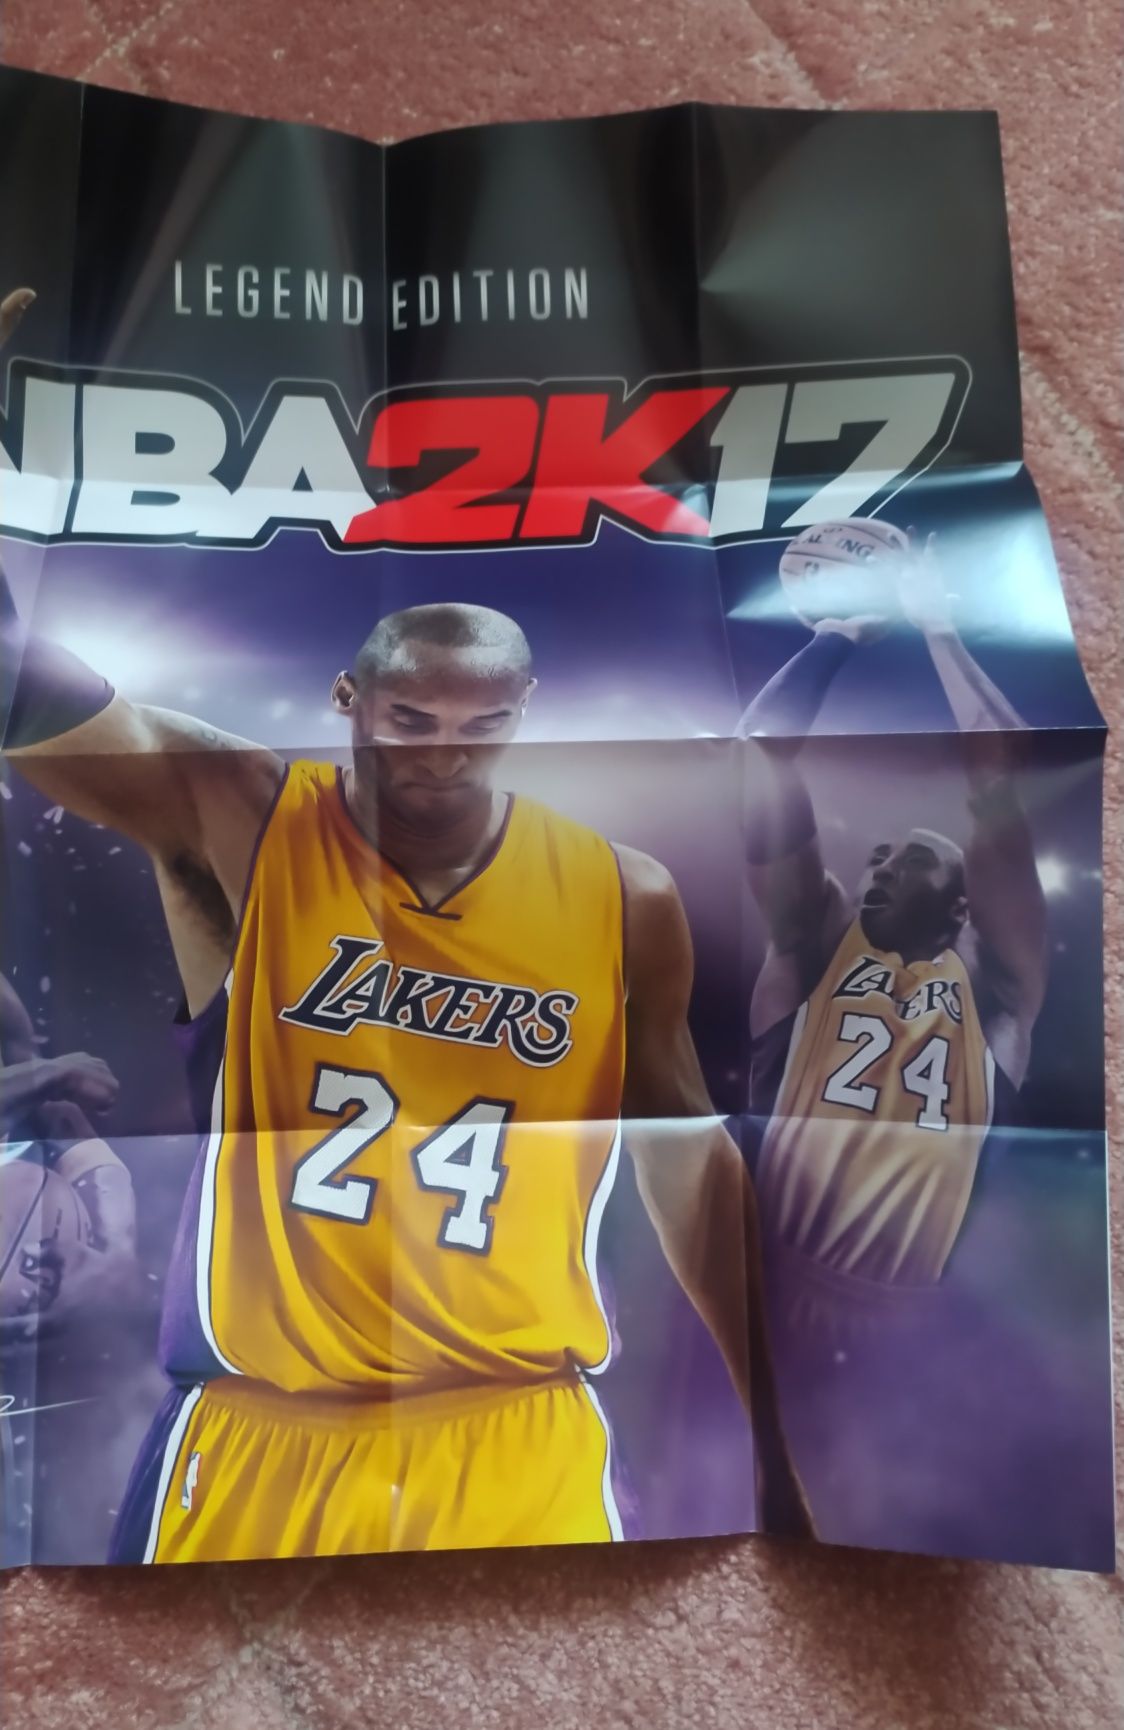 Sprzedam grę NBA 2k17 na Xbox